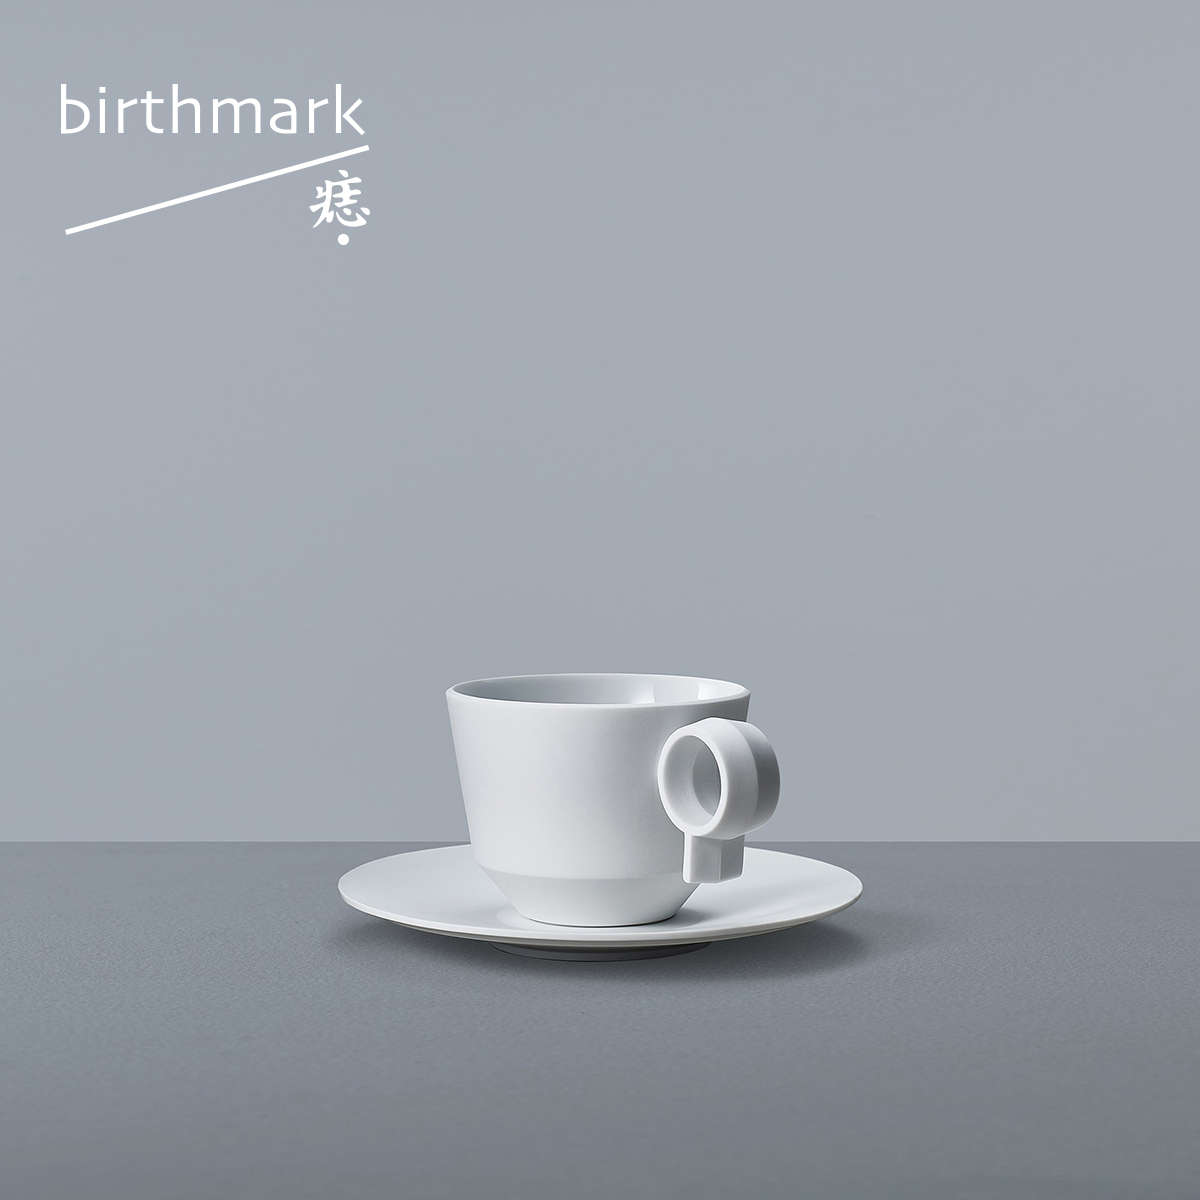 耳垂杯碟 200ml 痣birthmark 咖啡杯极简白色下午茶景德镇陶瓷杯